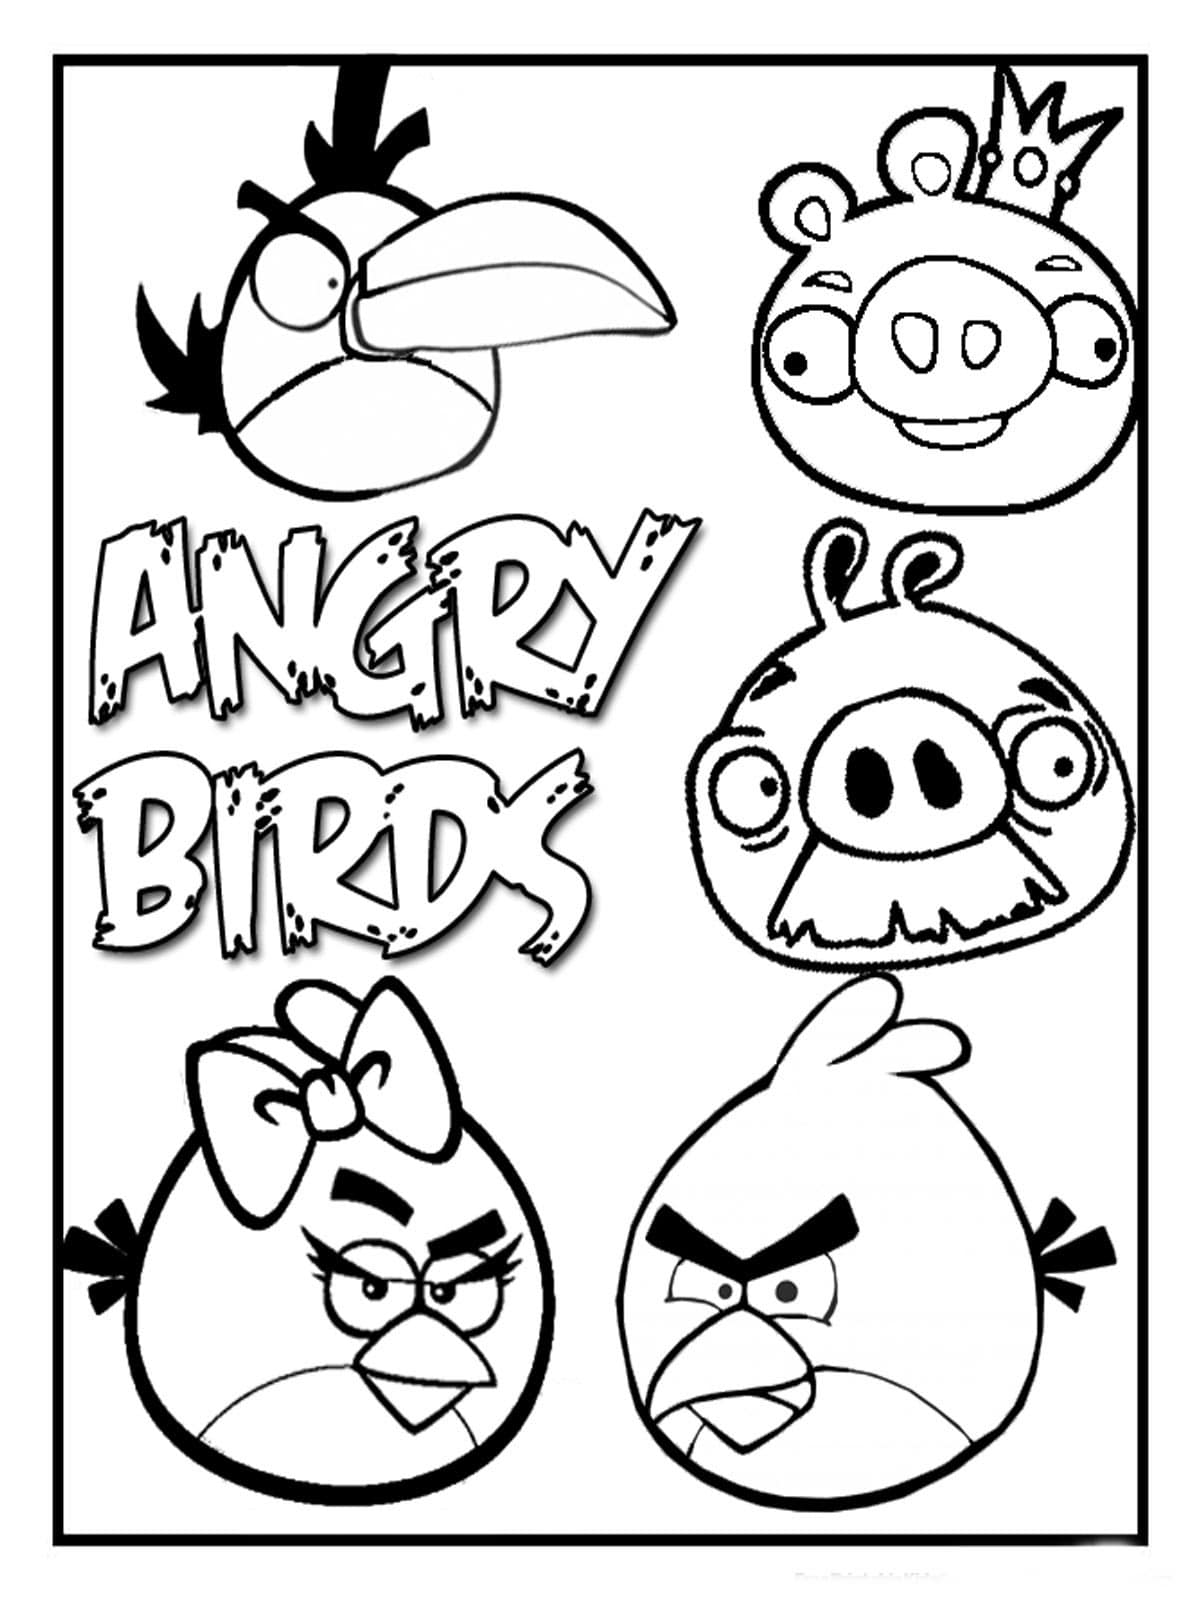 Disegni da colorare Angry Birds. Stampa online per bambini